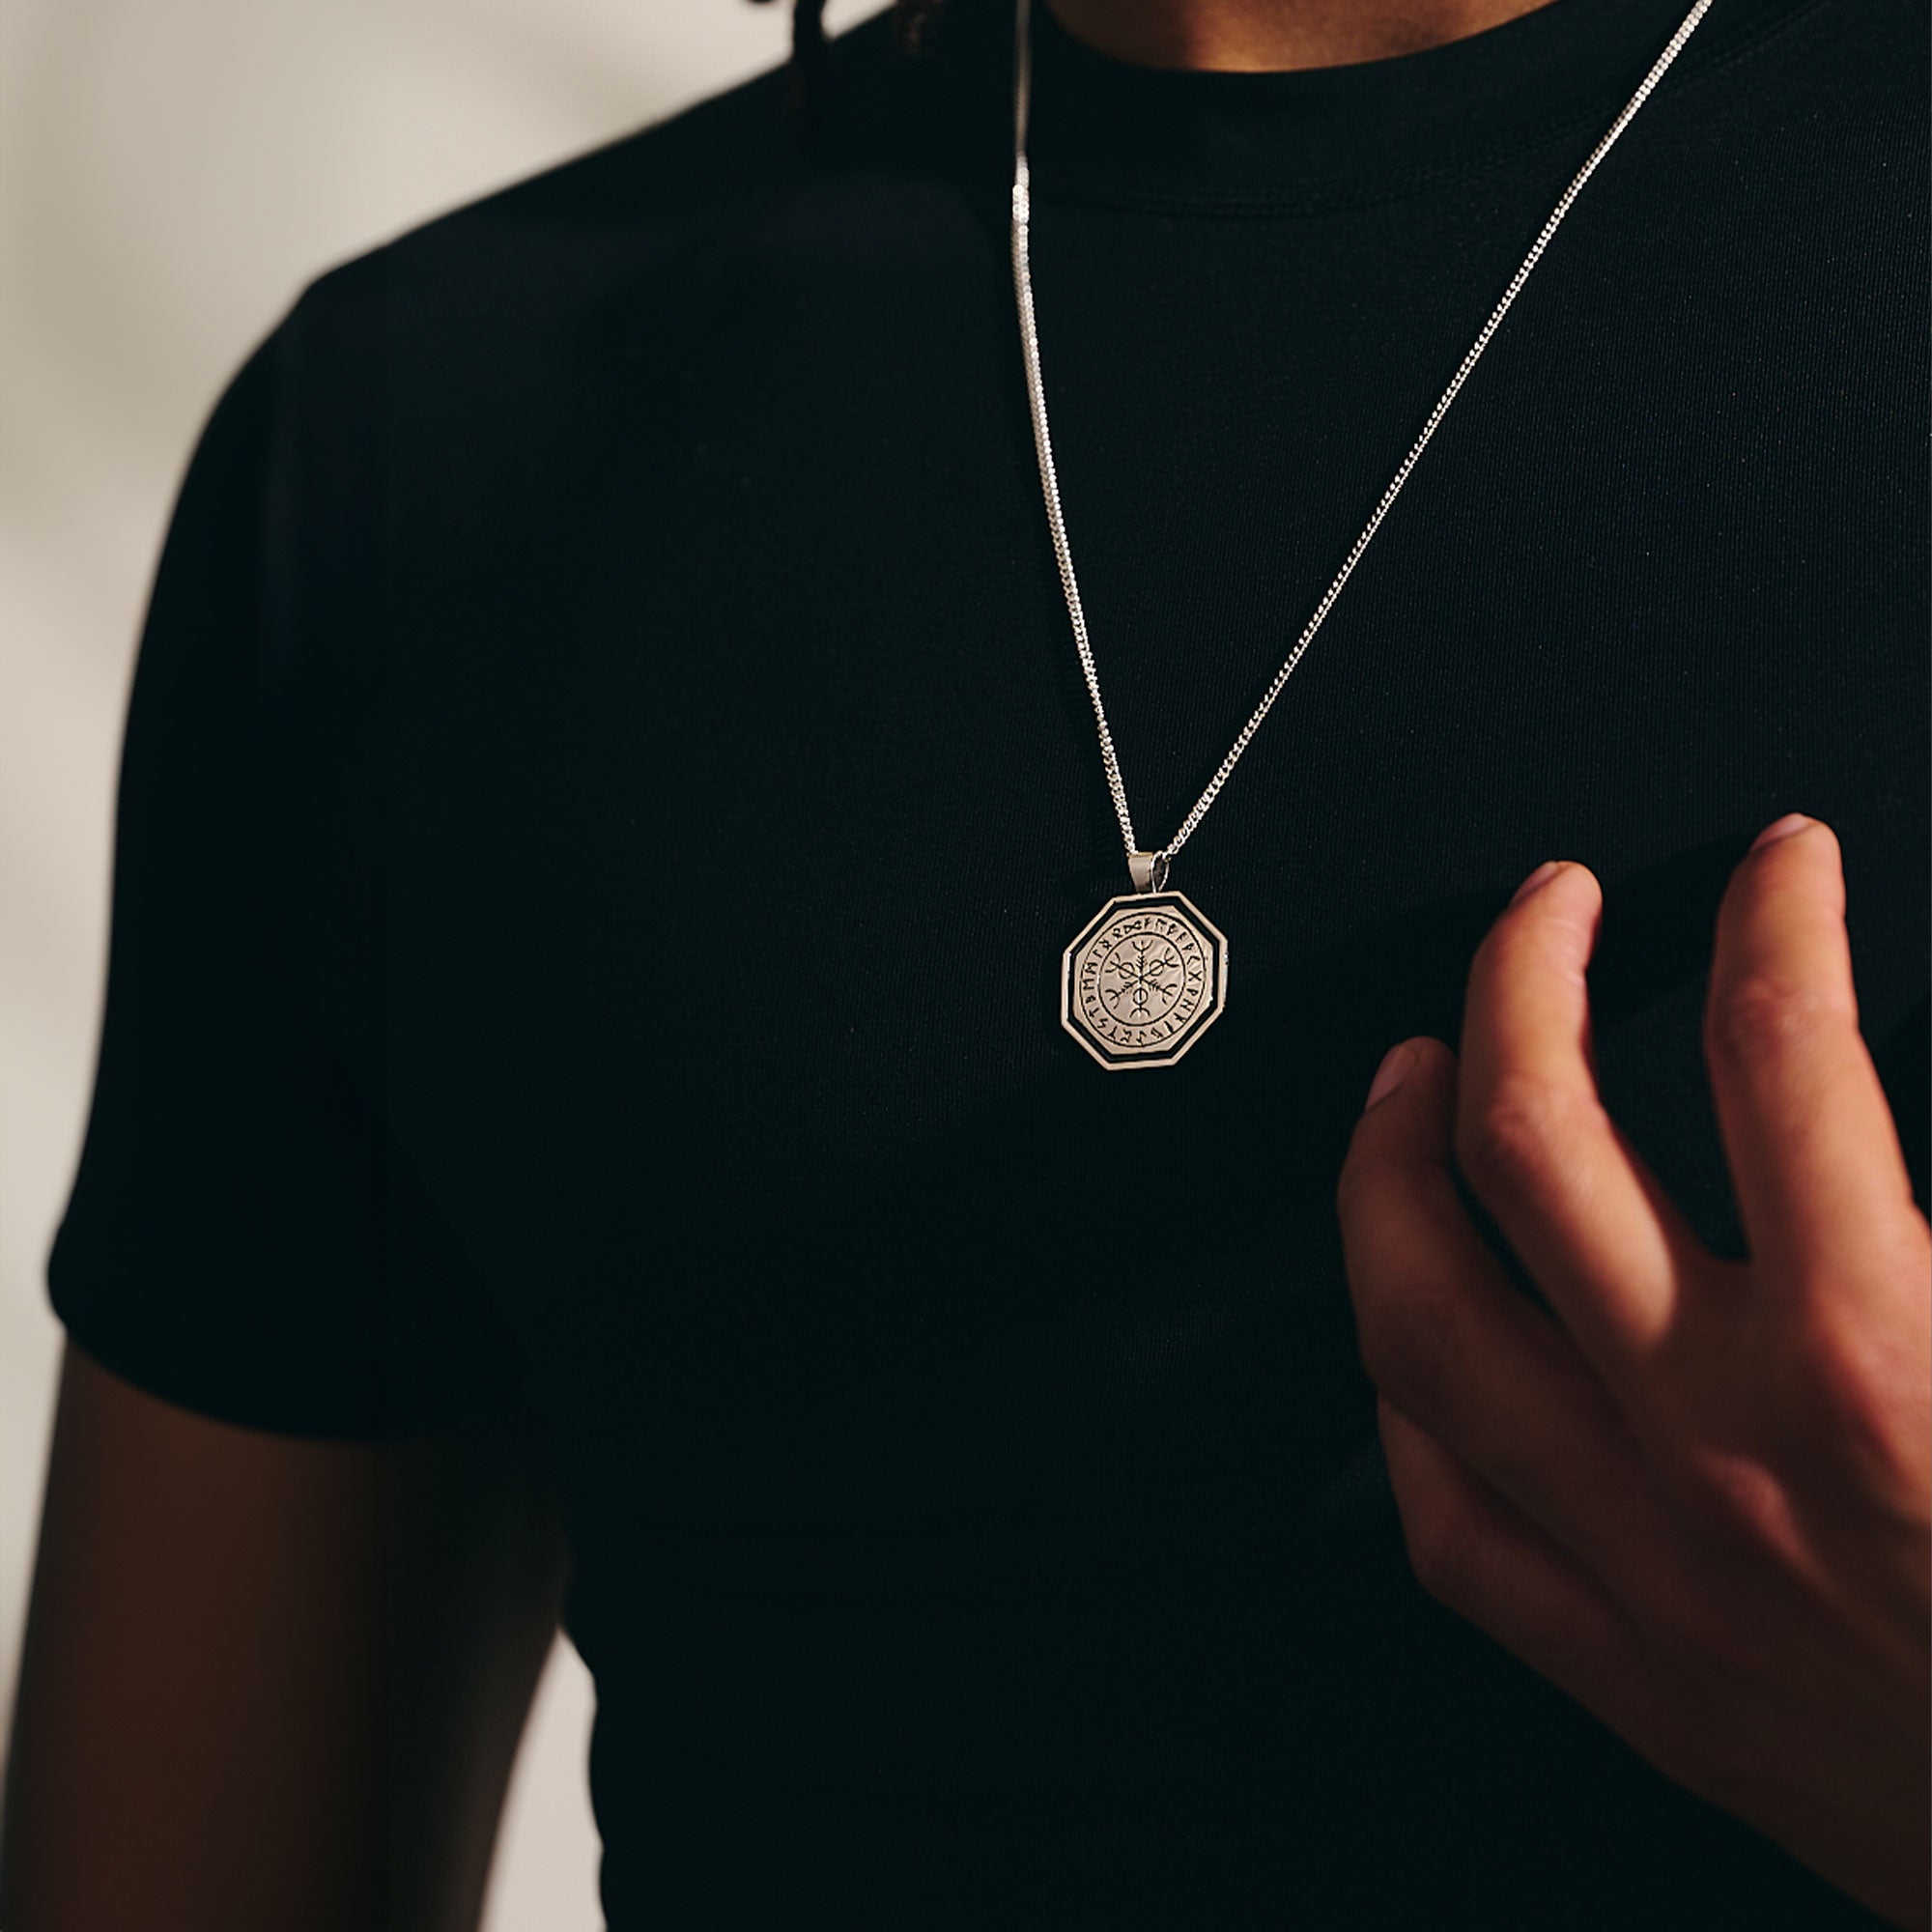 vegvisir wayfinder rune symbols mens necklace for safe travels